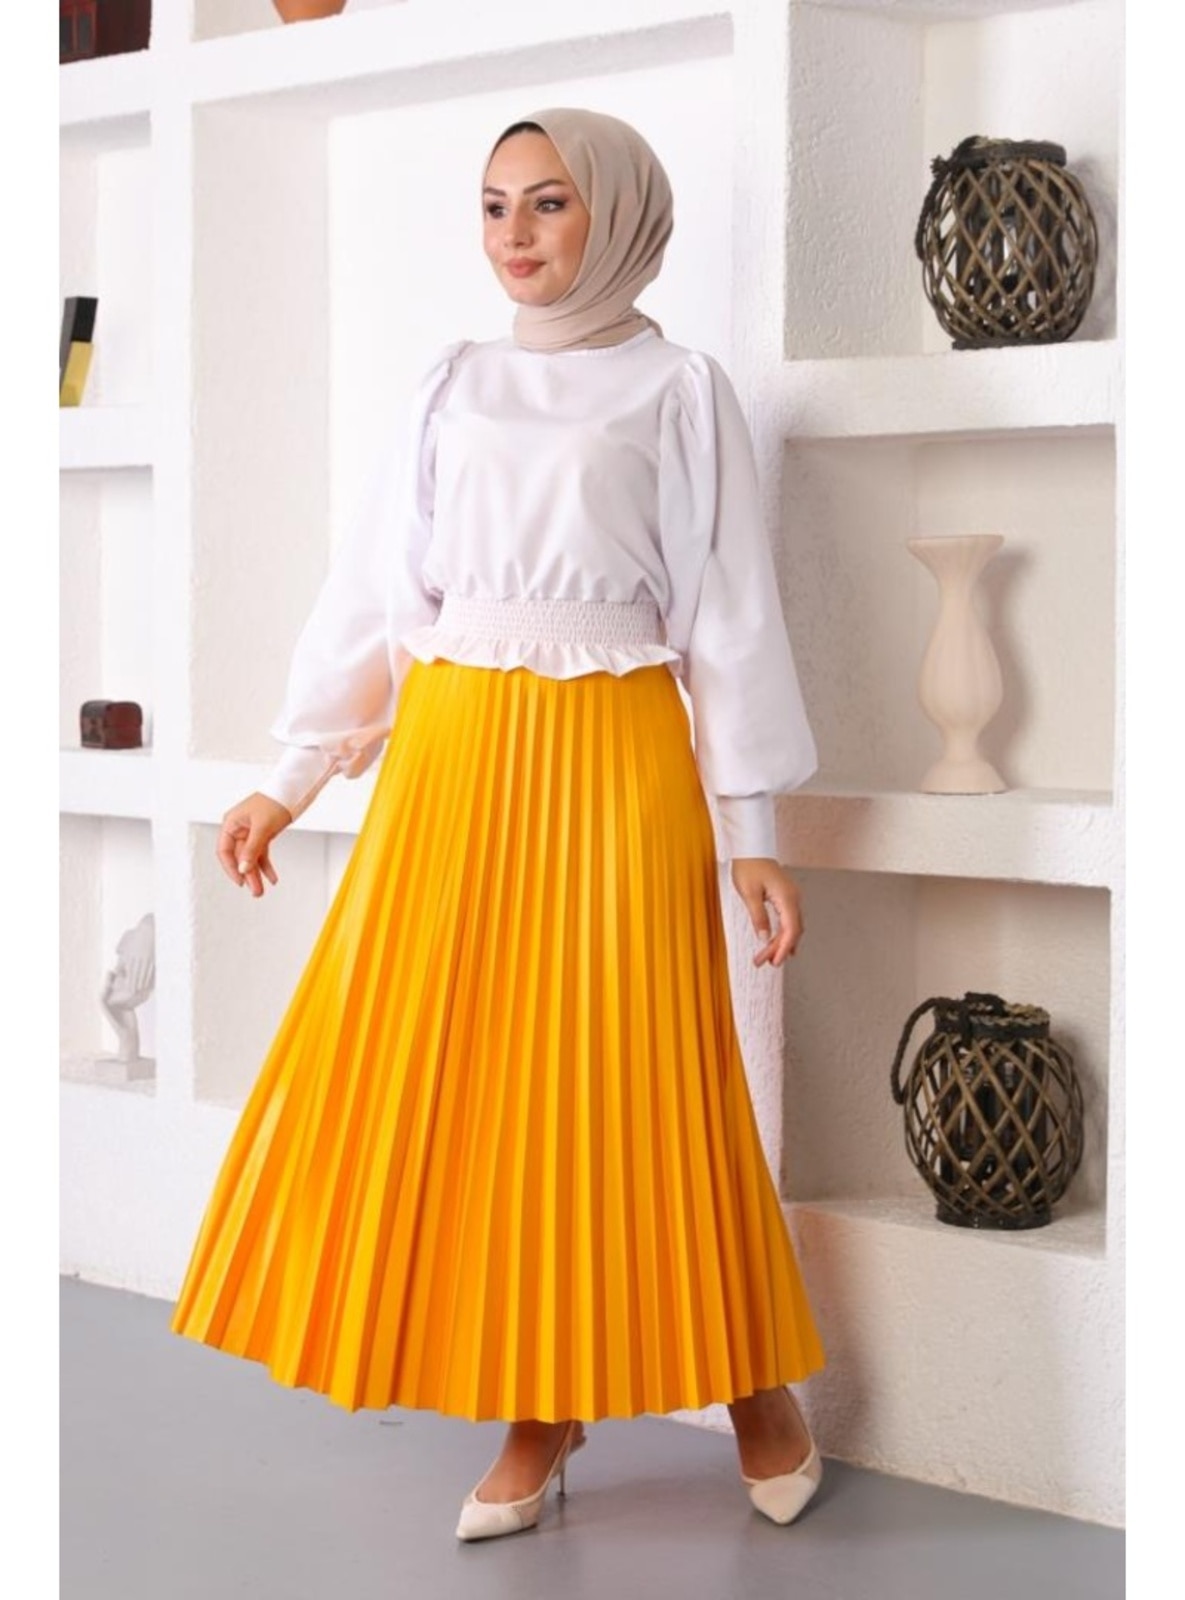  Yellow Skirt